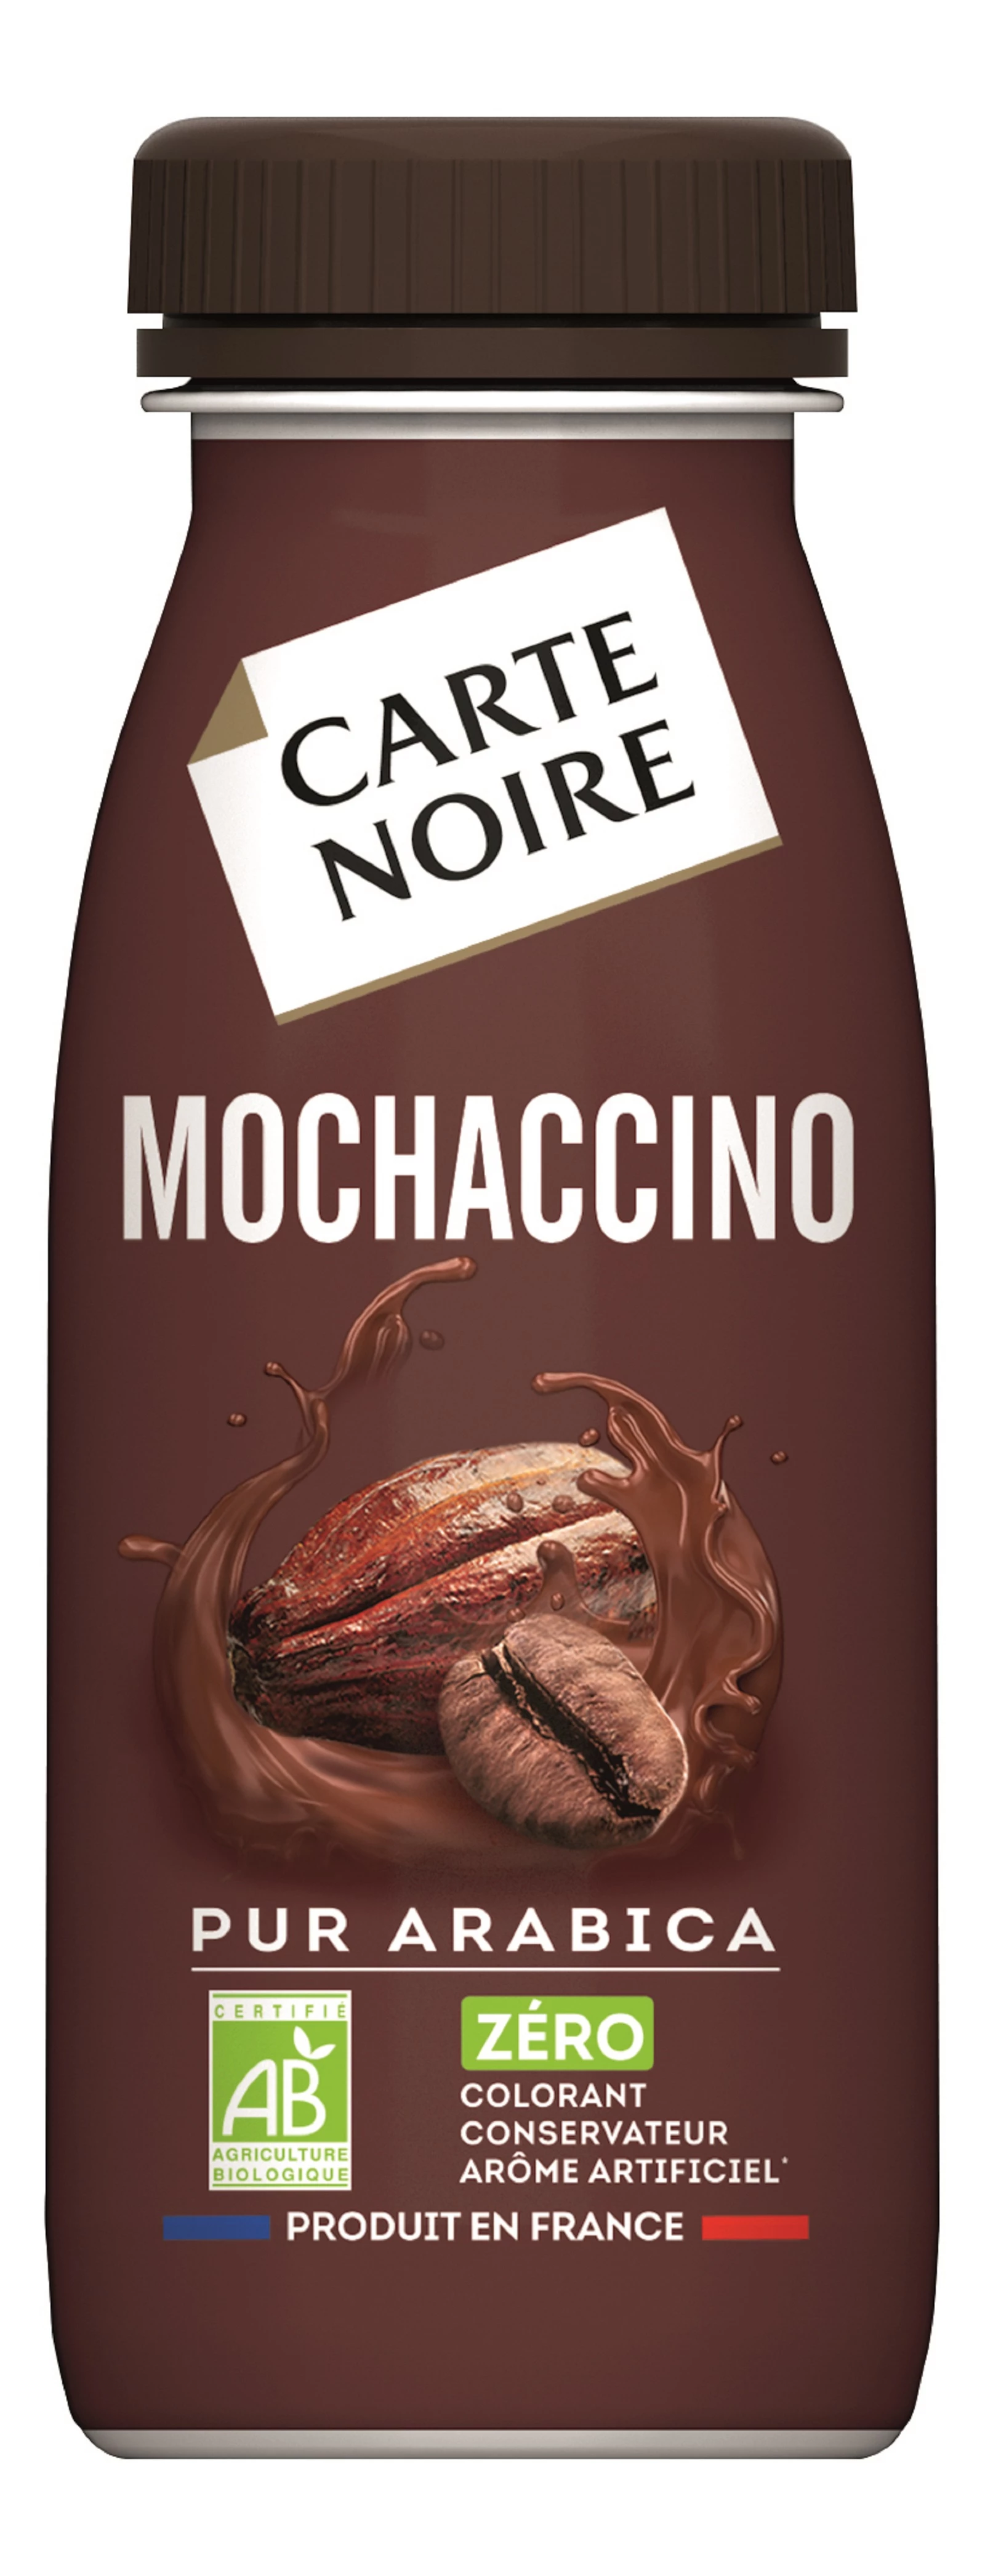 Bebida de café Mochaccino ecológico 25cl - CARTE NOIRE